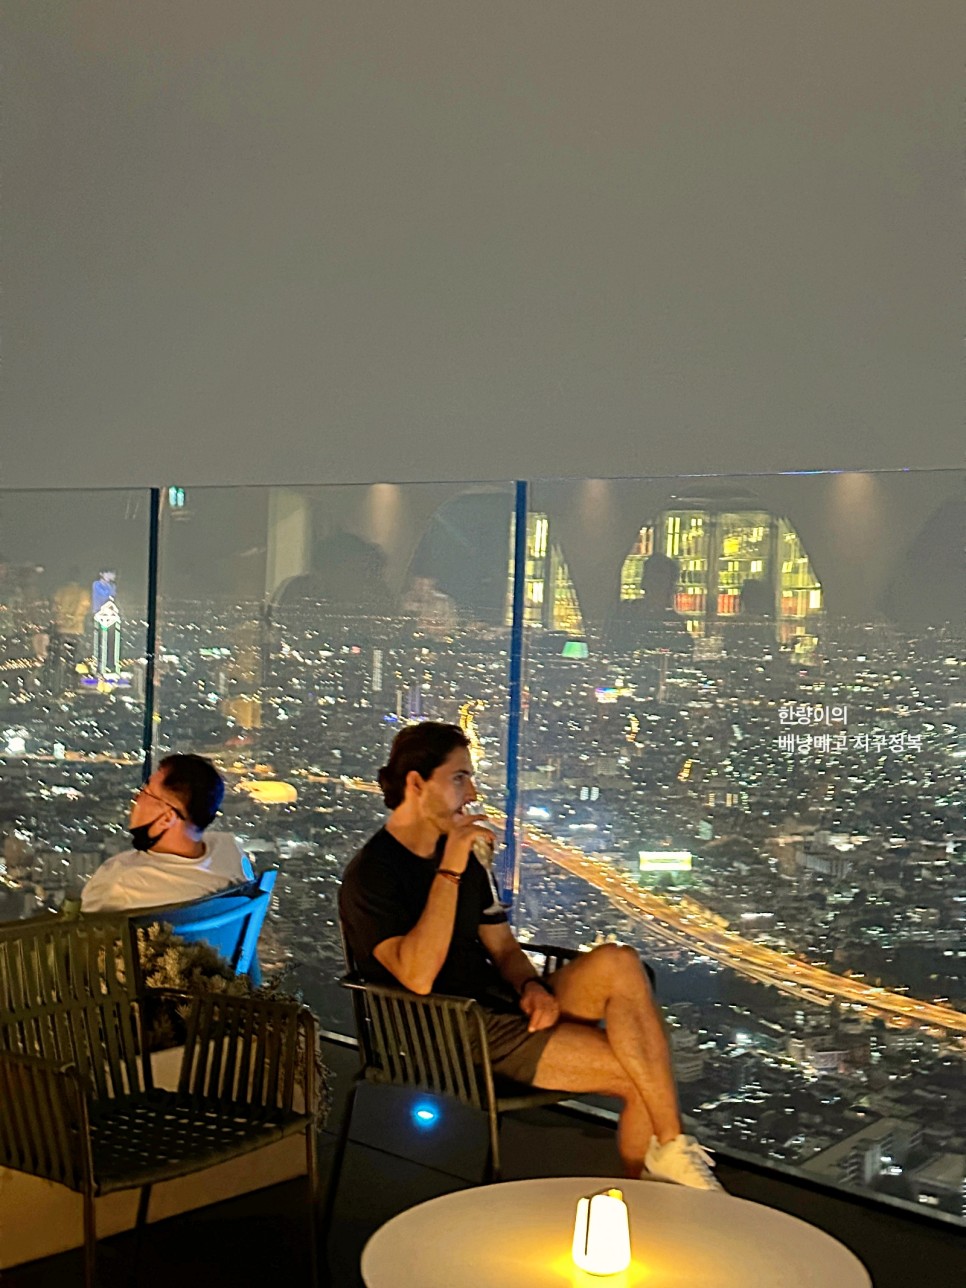 태국 방콕 여행코스 마하나콘 전망대 입장권 비오는 날..ㅠㅠ